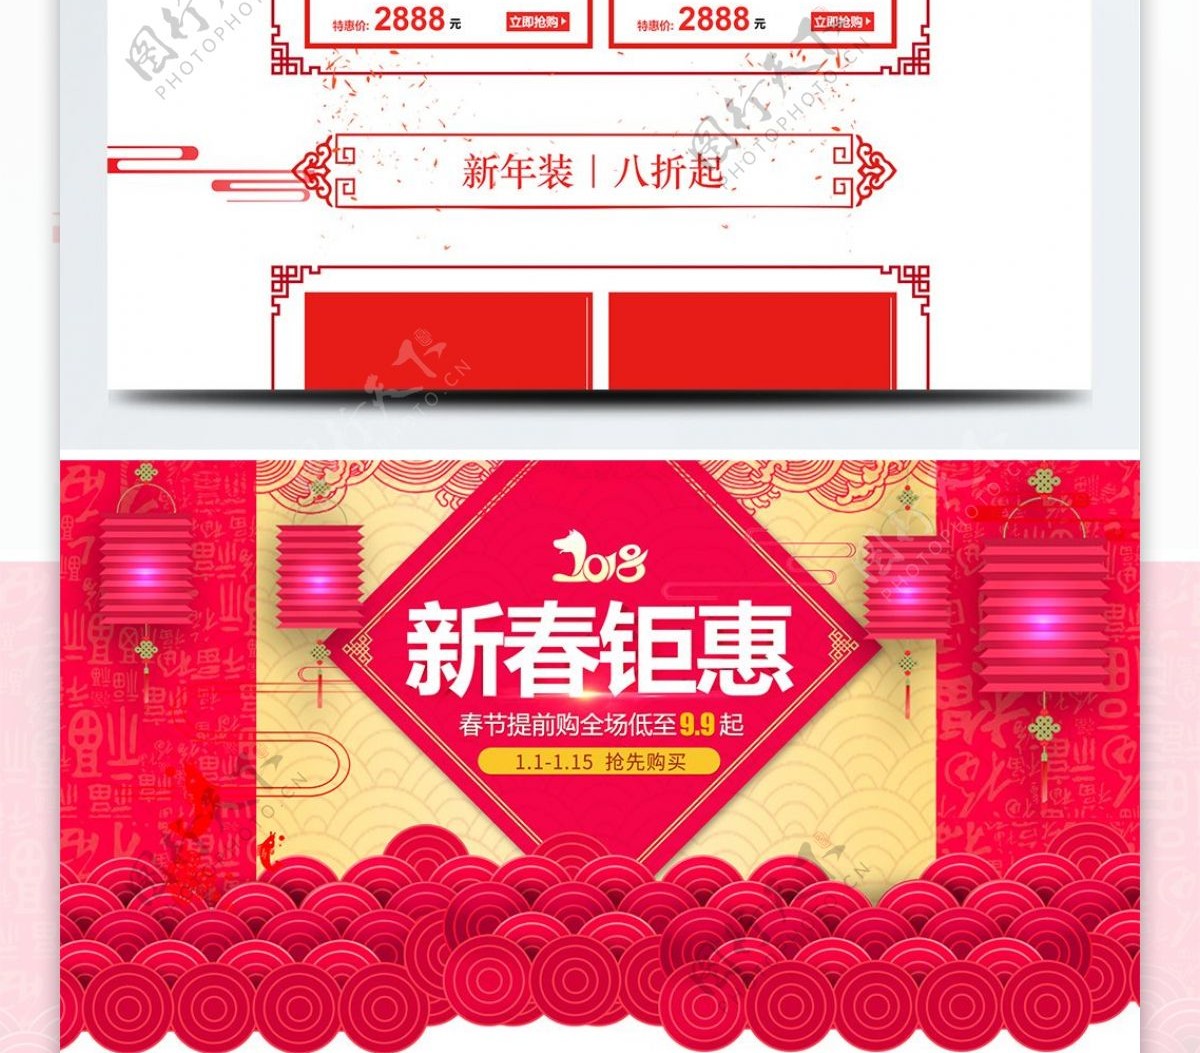 中国风天猫淘宝新年首页装修模板PSD